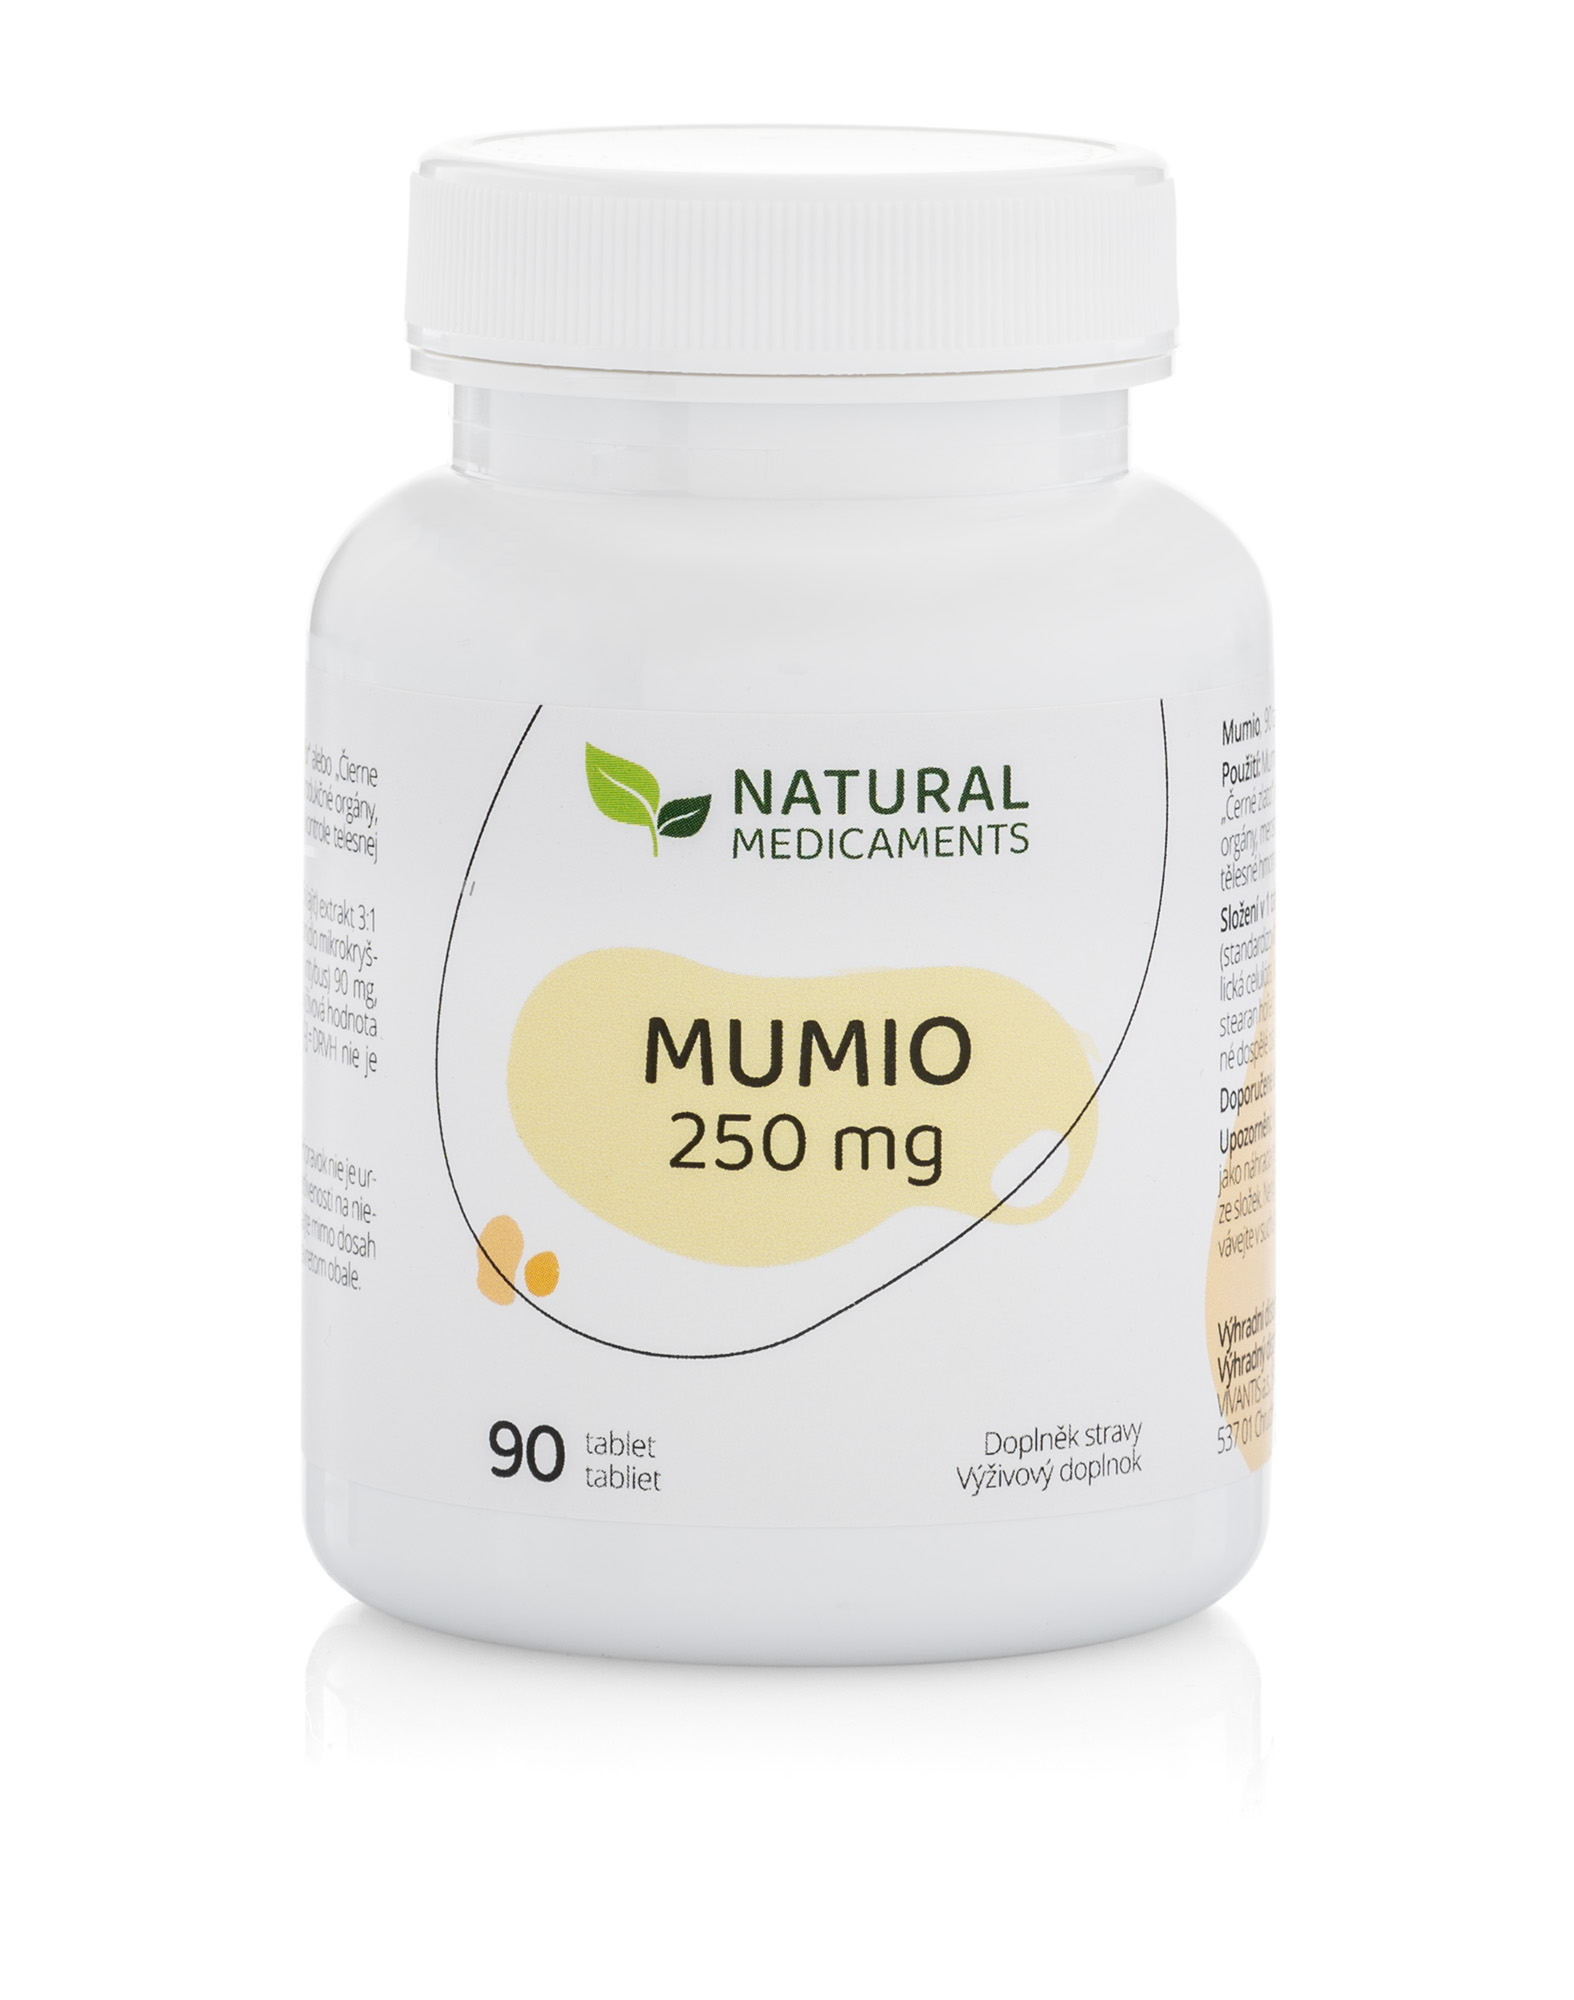 Natural Medicaments Mumio 250 mg 90 tablet